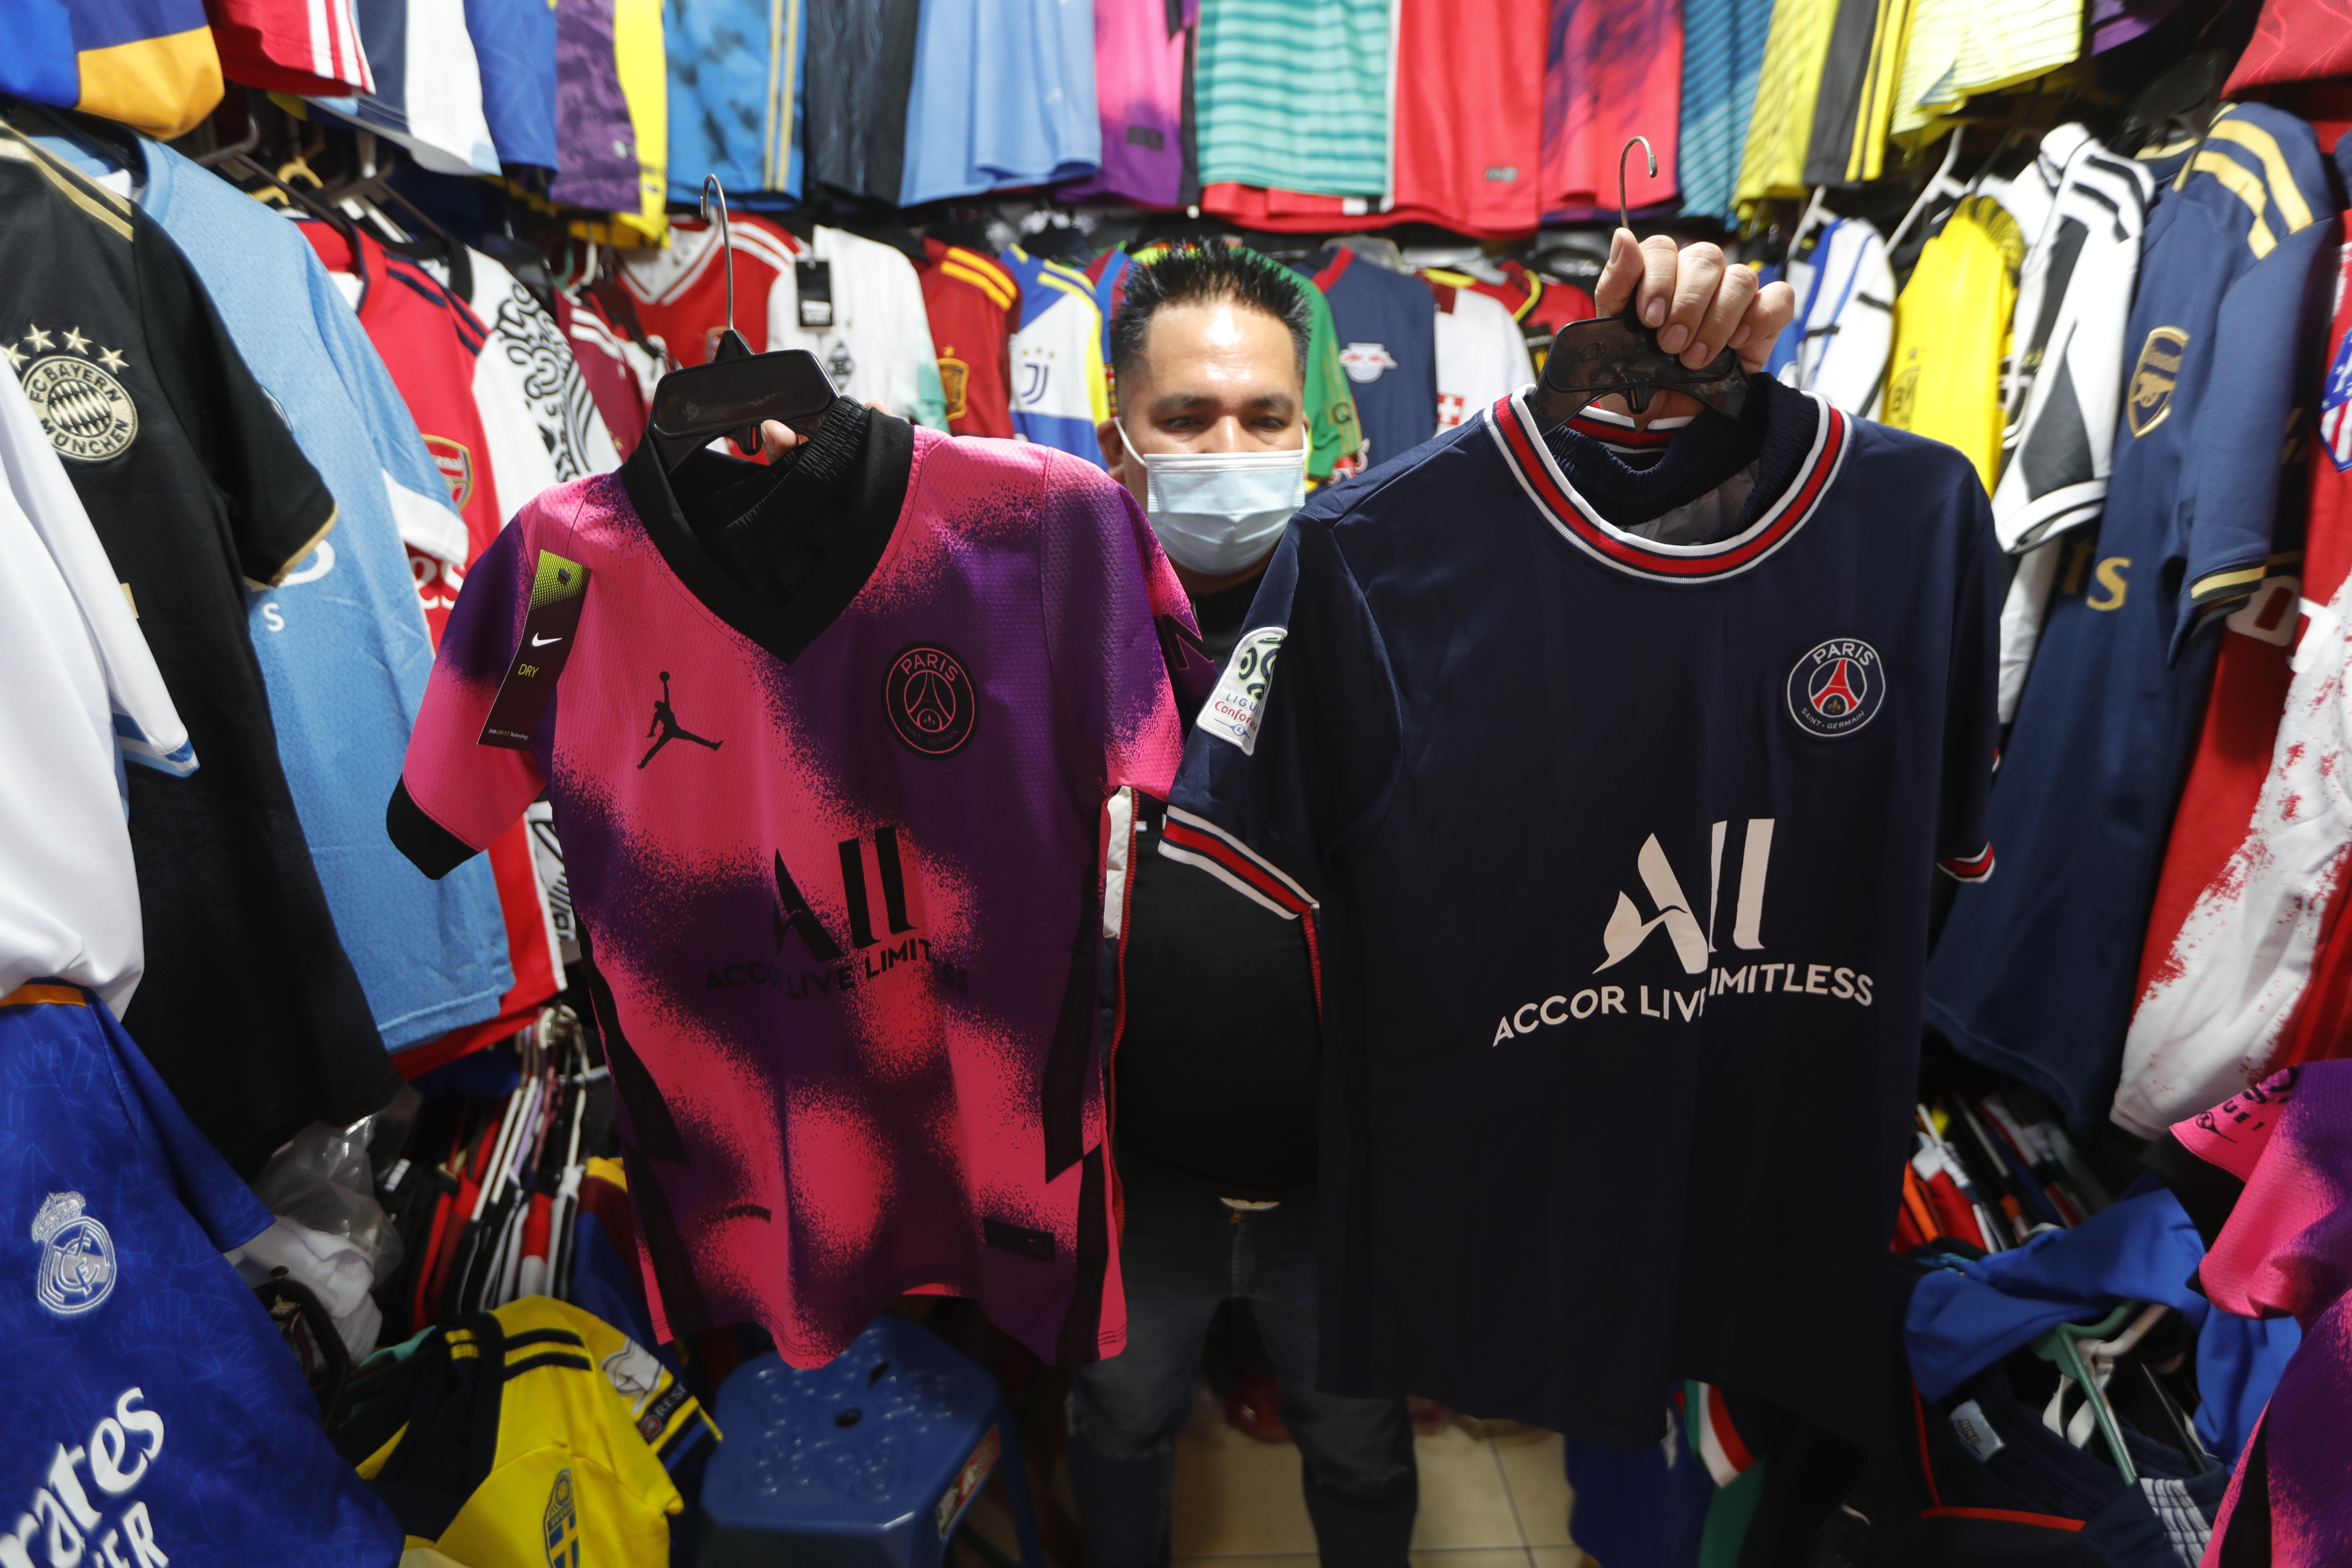 Vendedores del mercado el Amate, en la 18 calle, ofrecen camisolas del equipo PSG actual equipo del argentino Lionel Messi. Foto Prensa Libre: Esbin García.